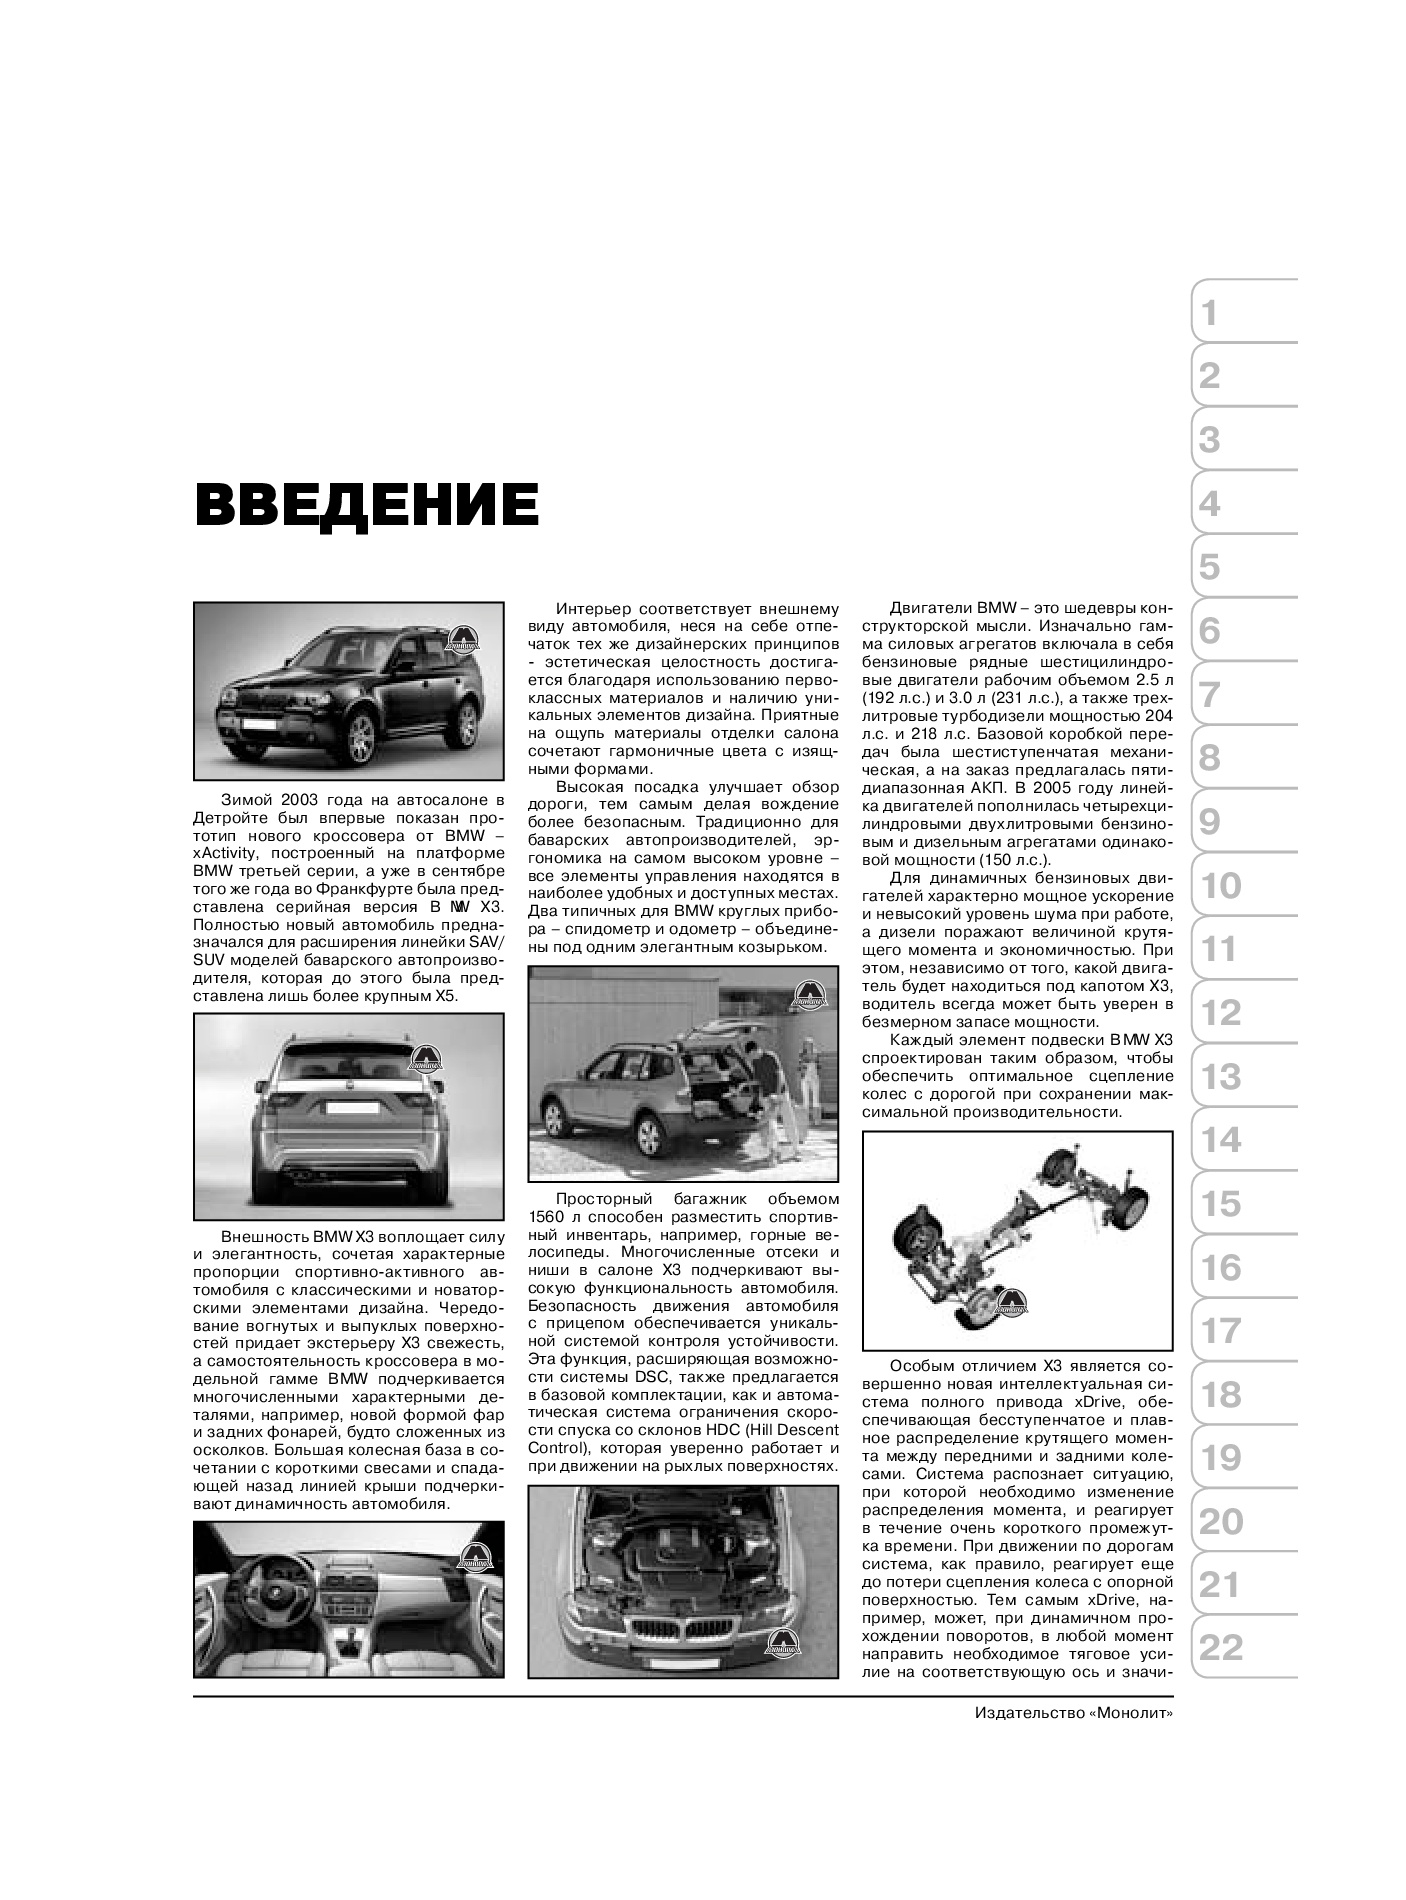 Комплект литературы по ремонту и обслуживанию BMW X3 с 2003 года выпуска